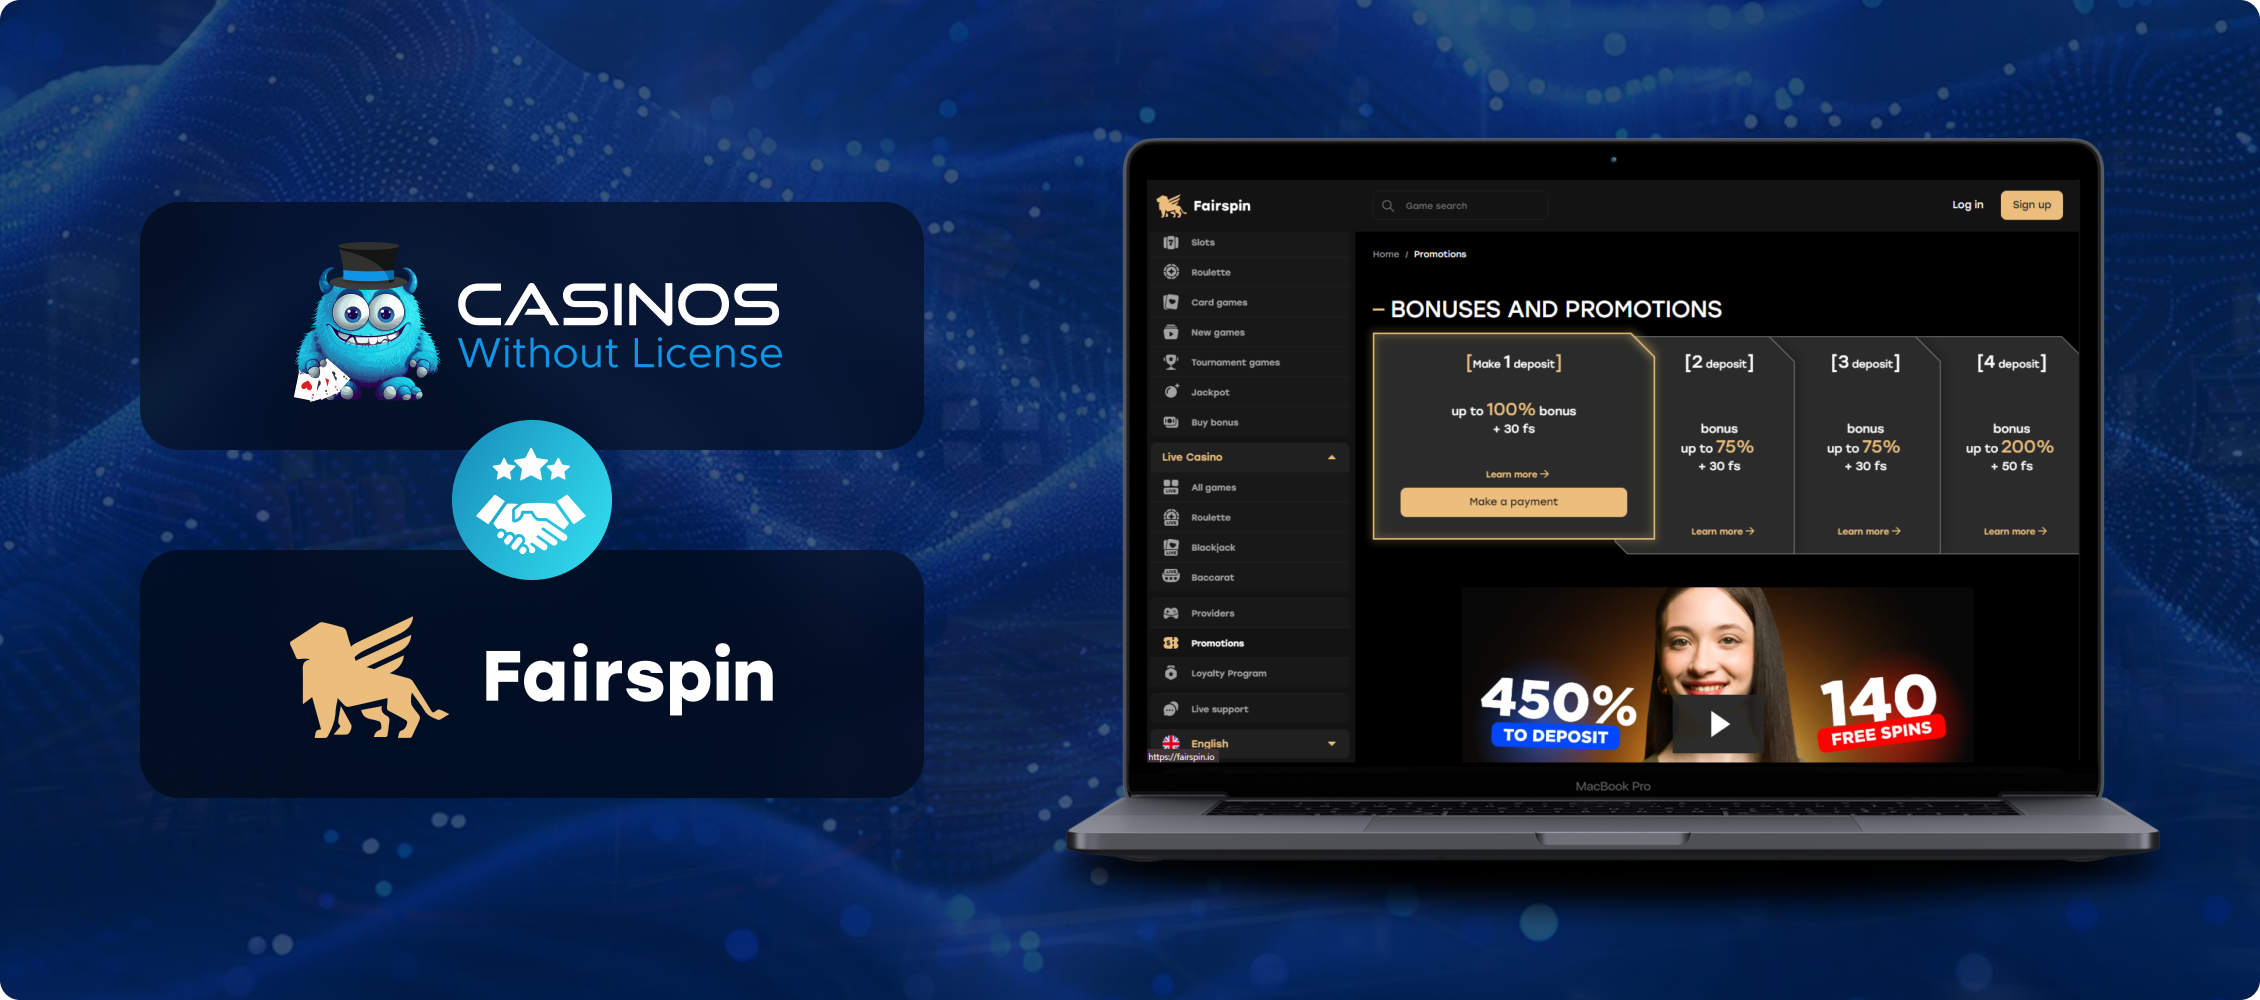 Fairspin_casino_bonus